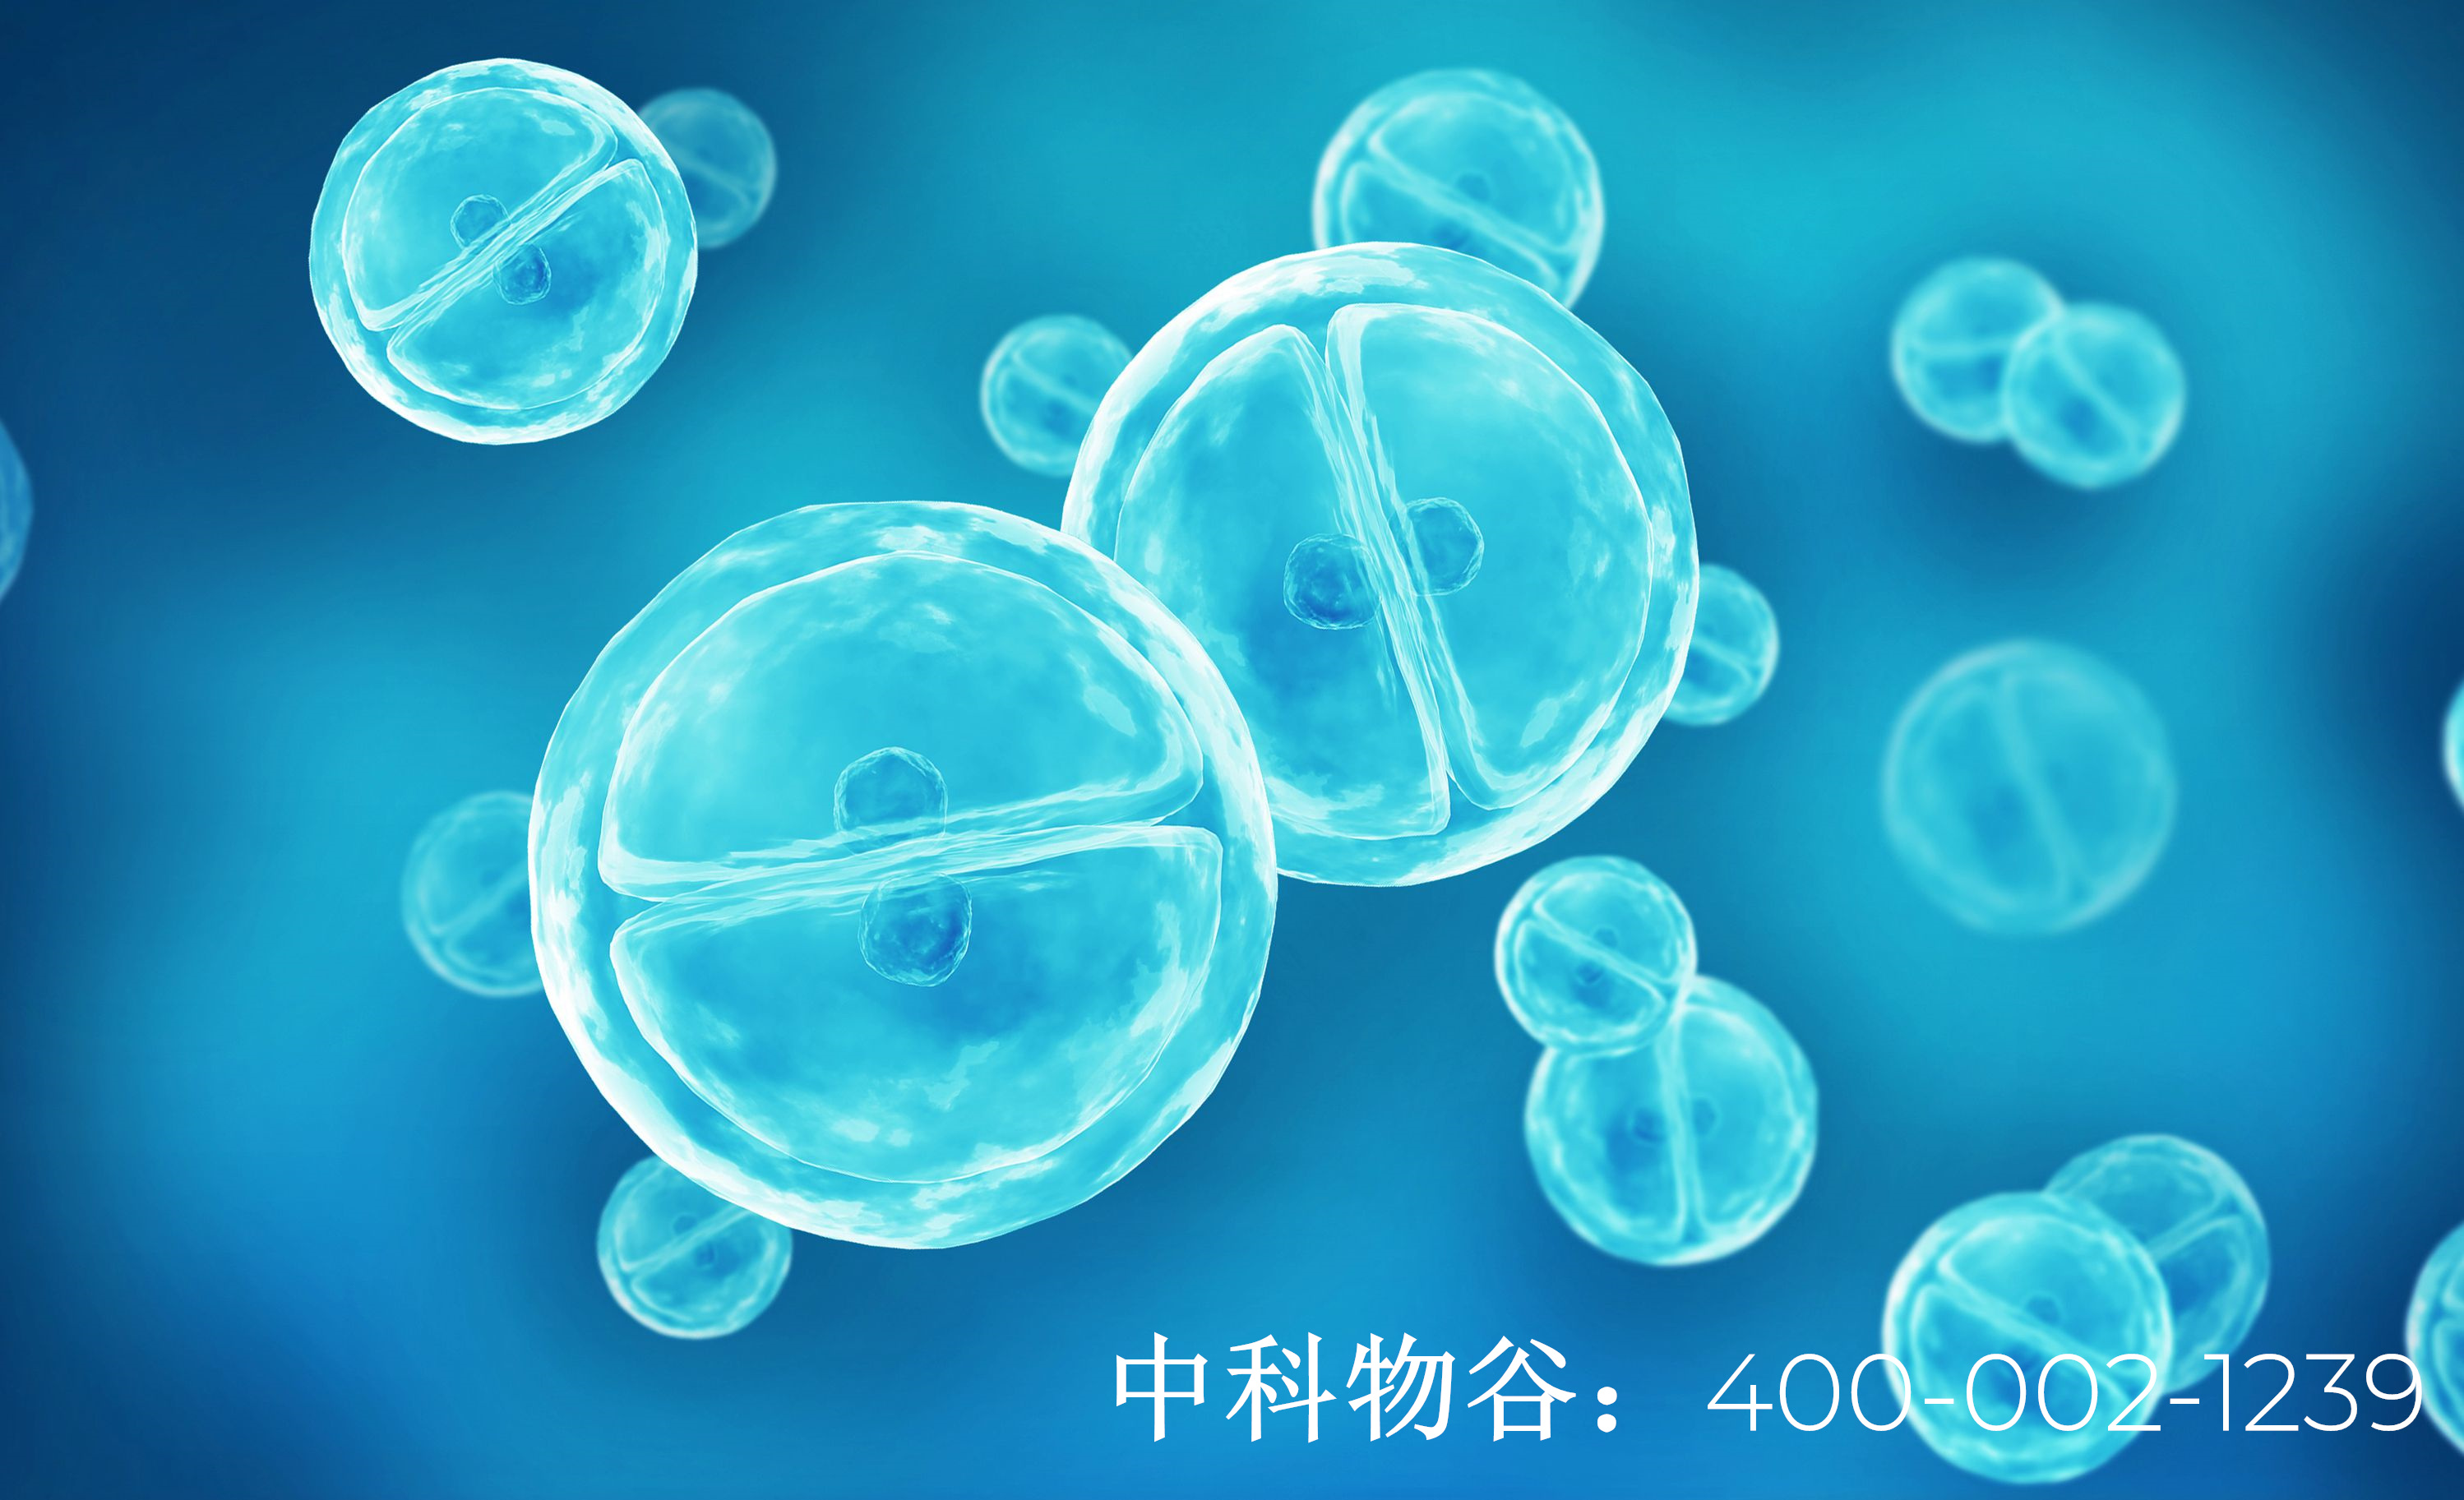 中国有多少家干细胞公司呢